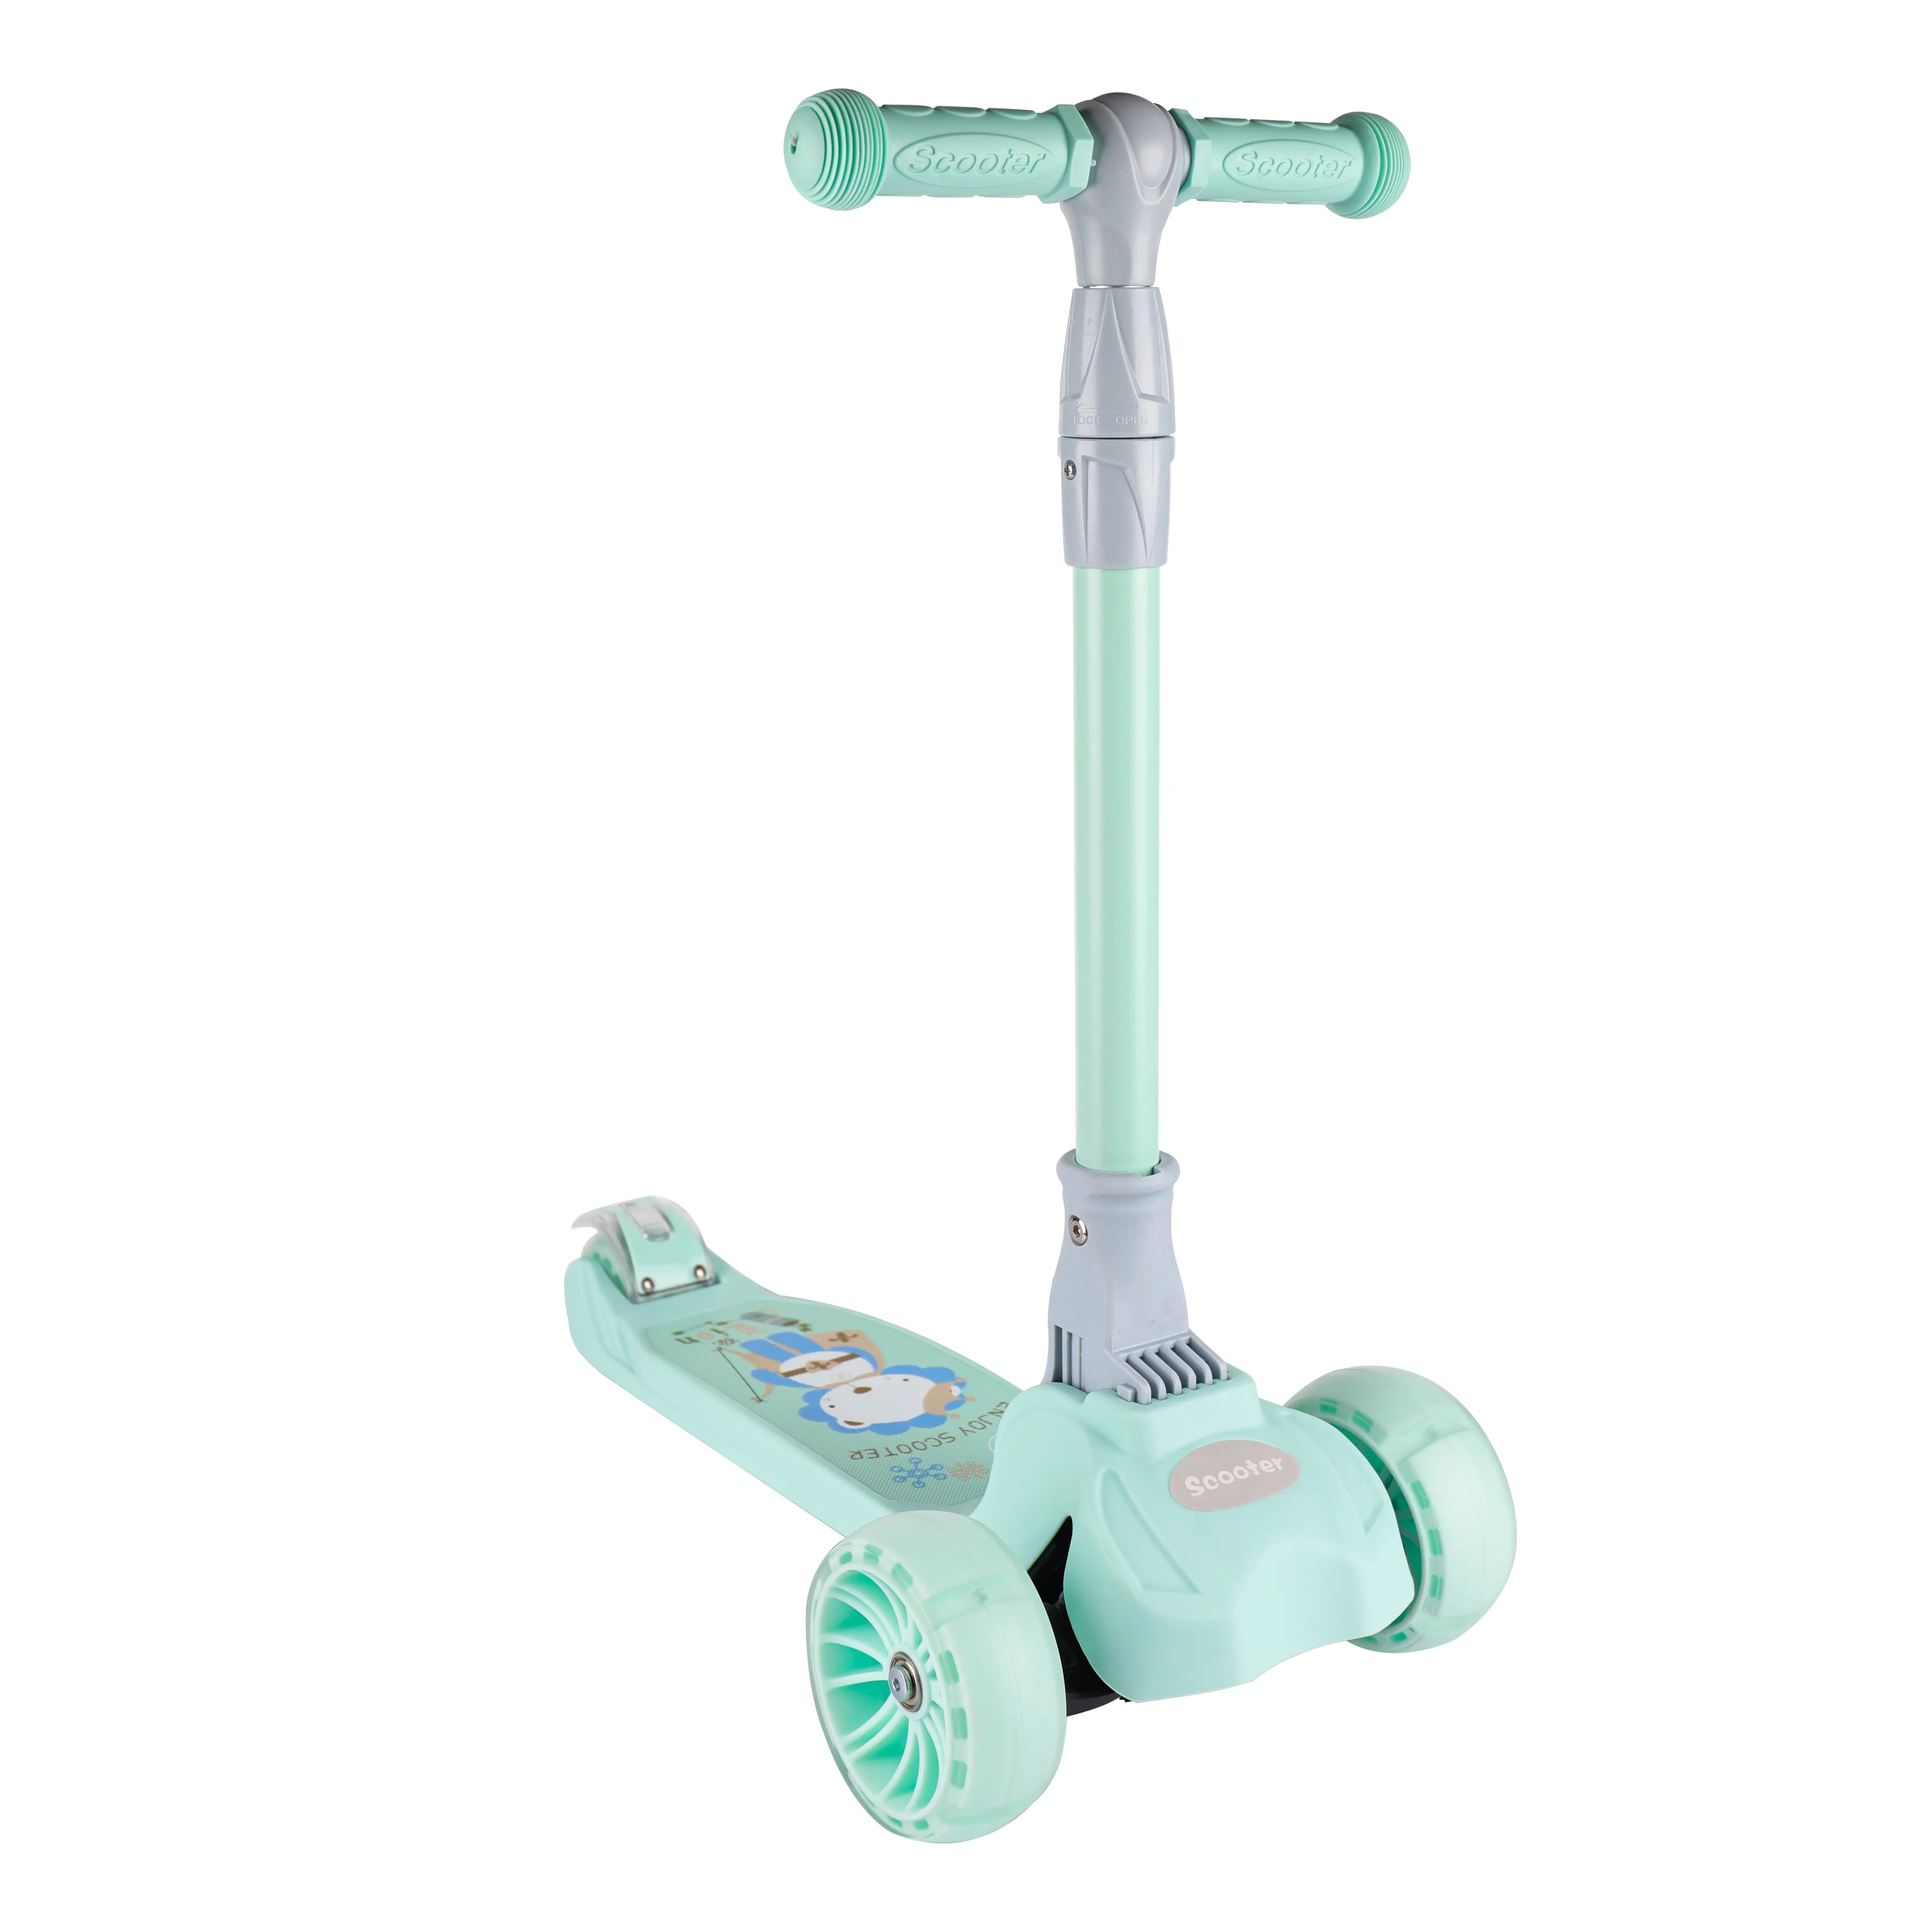 Scooter infantil de três rodas com materiais de alta qualidade selecionados, com forte estabilidade